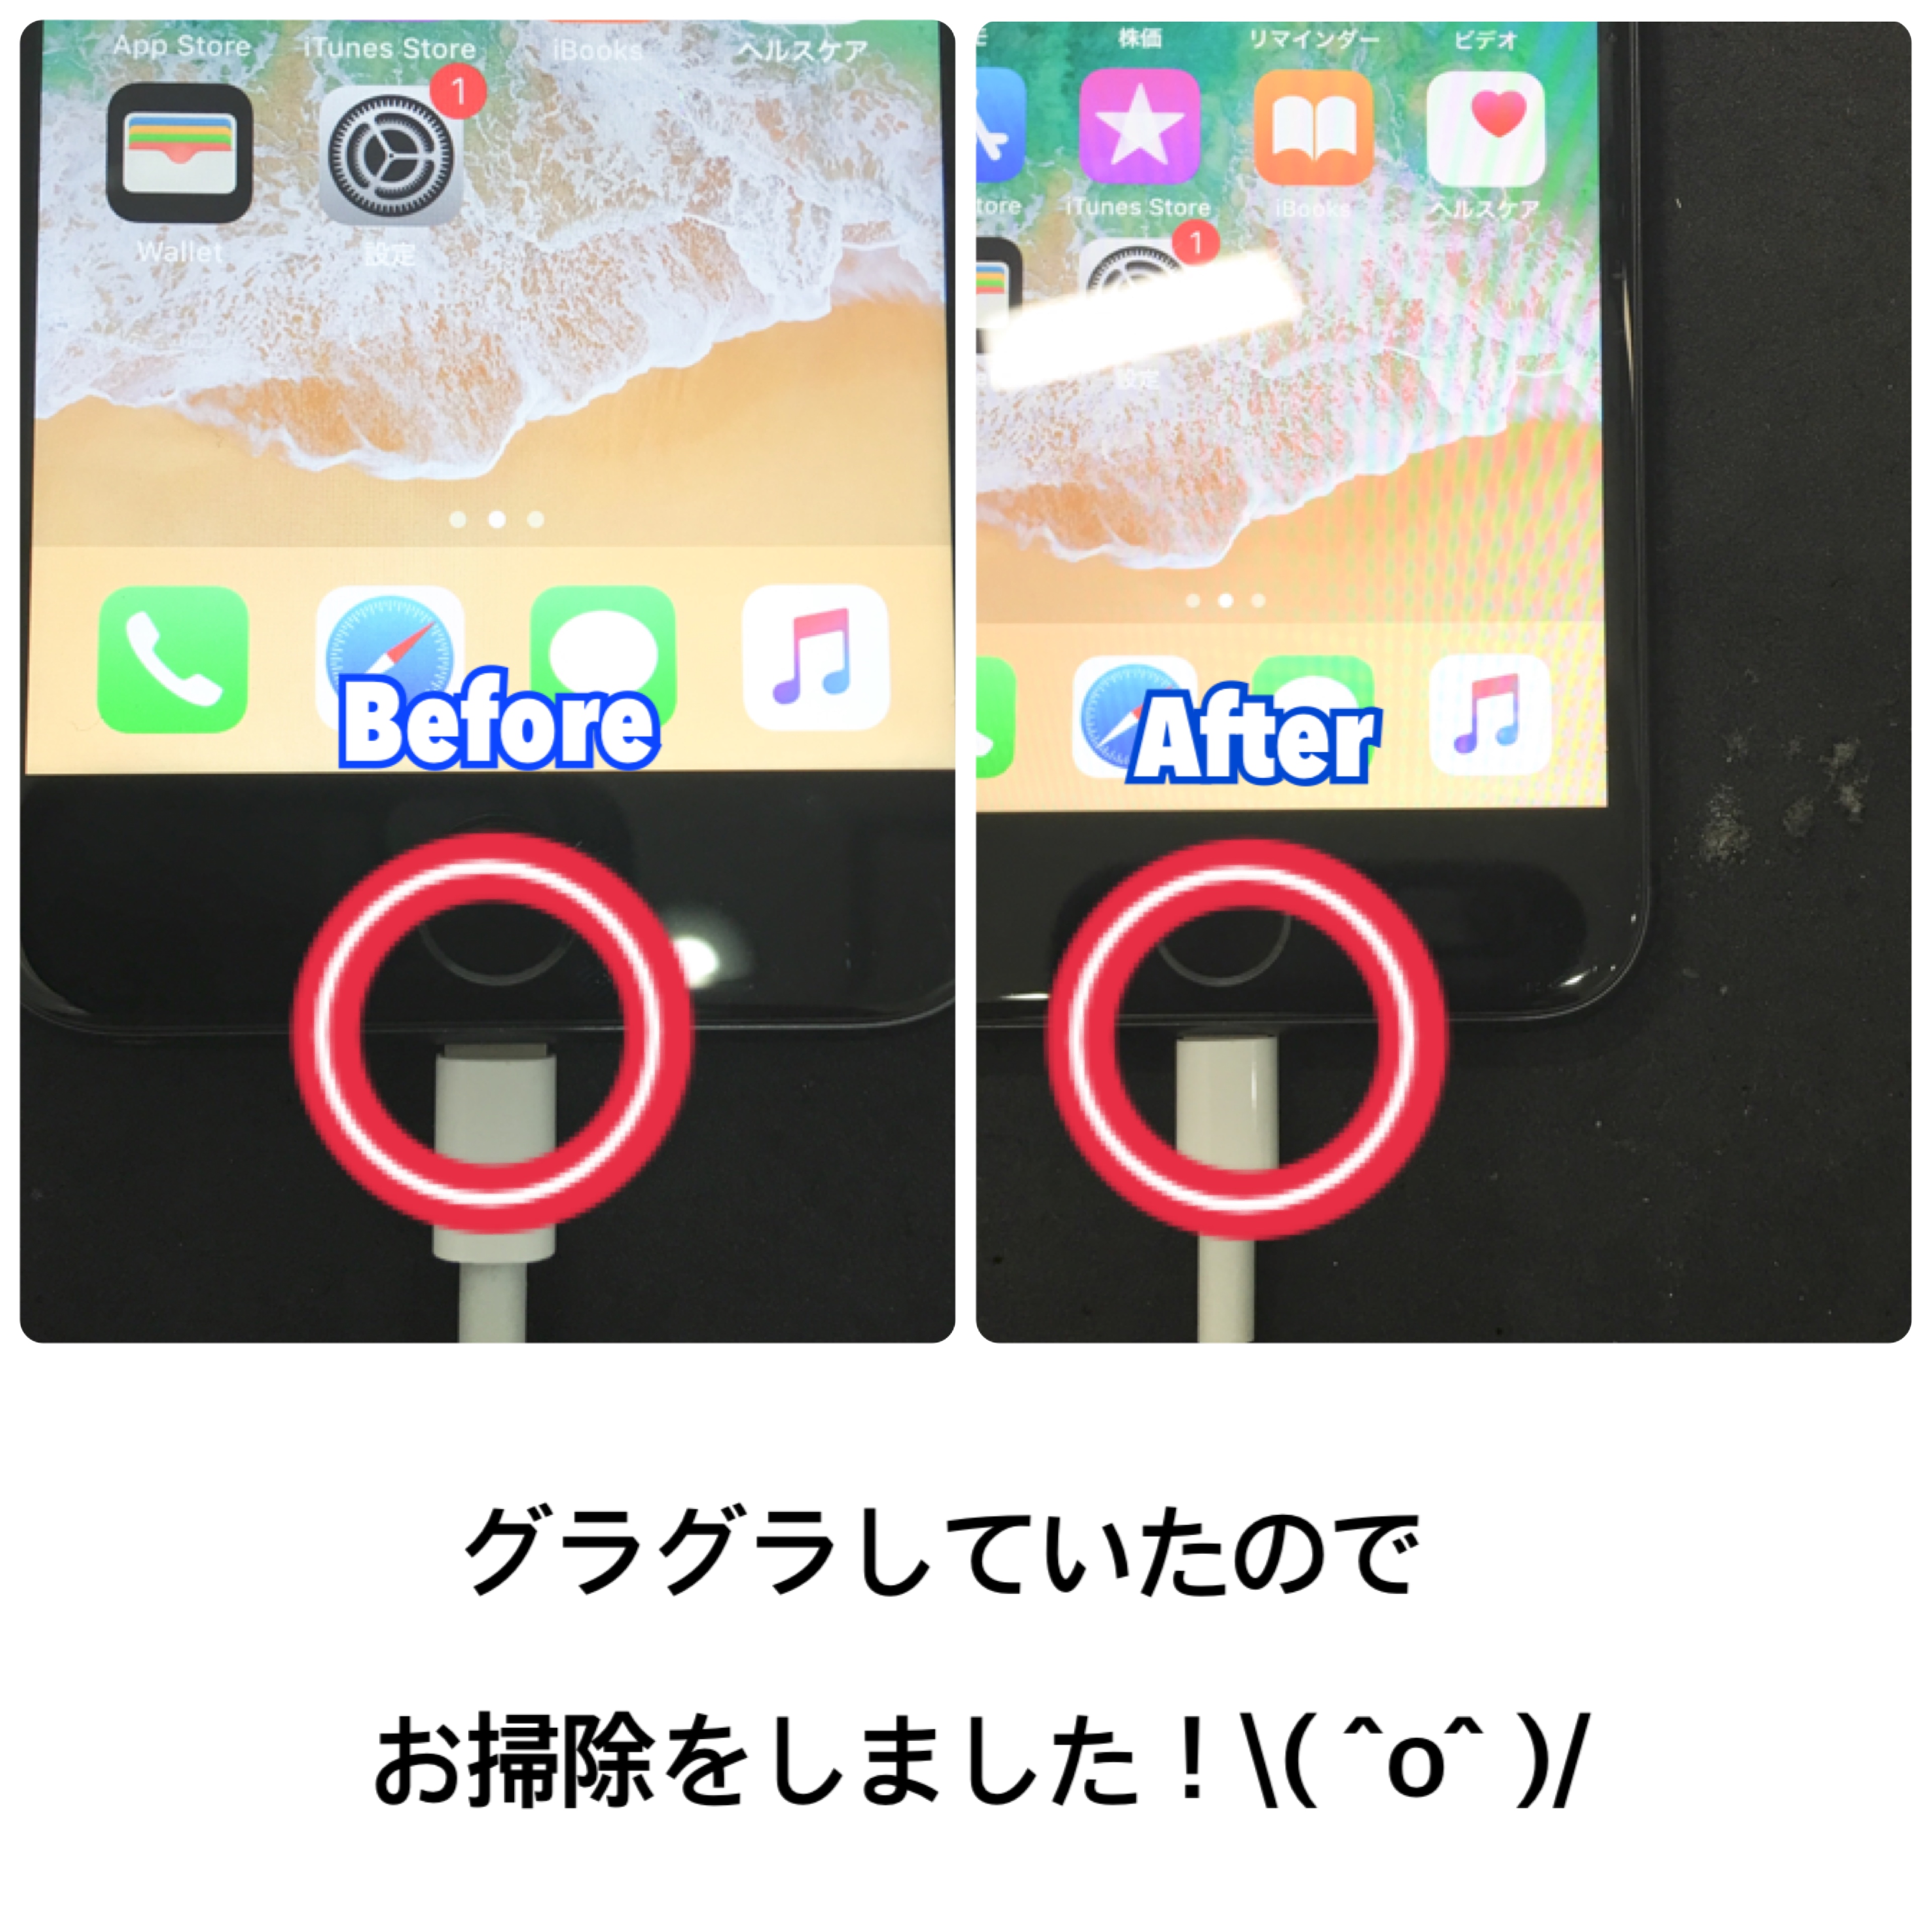 充電器かグラグラする 東大阪店 大阪のiphone修理 故障はicraft 出張修理も可能